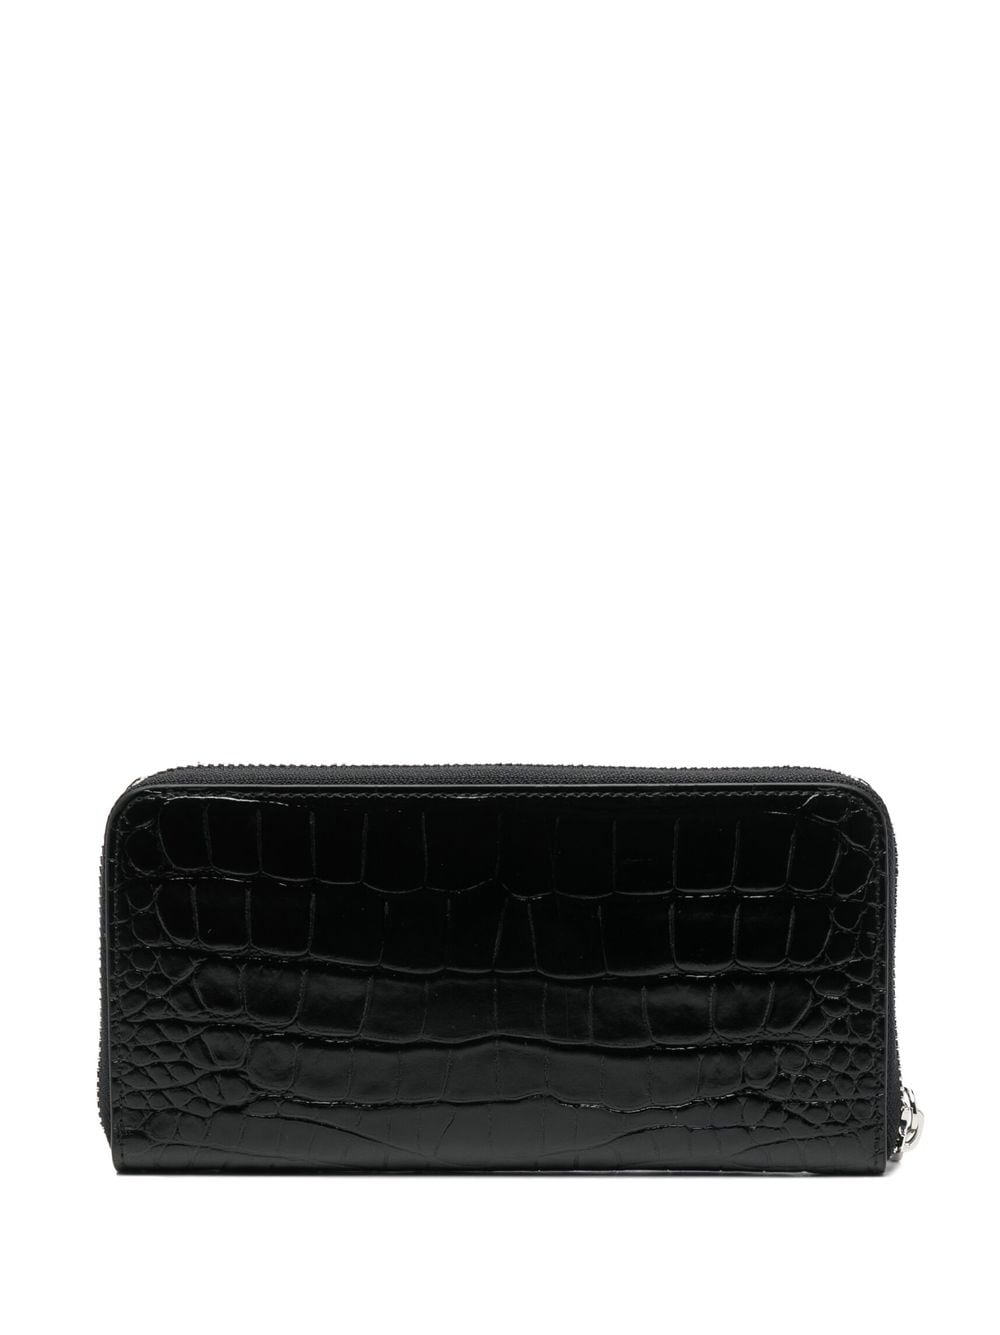 crocodile-embossed leather purse - 2